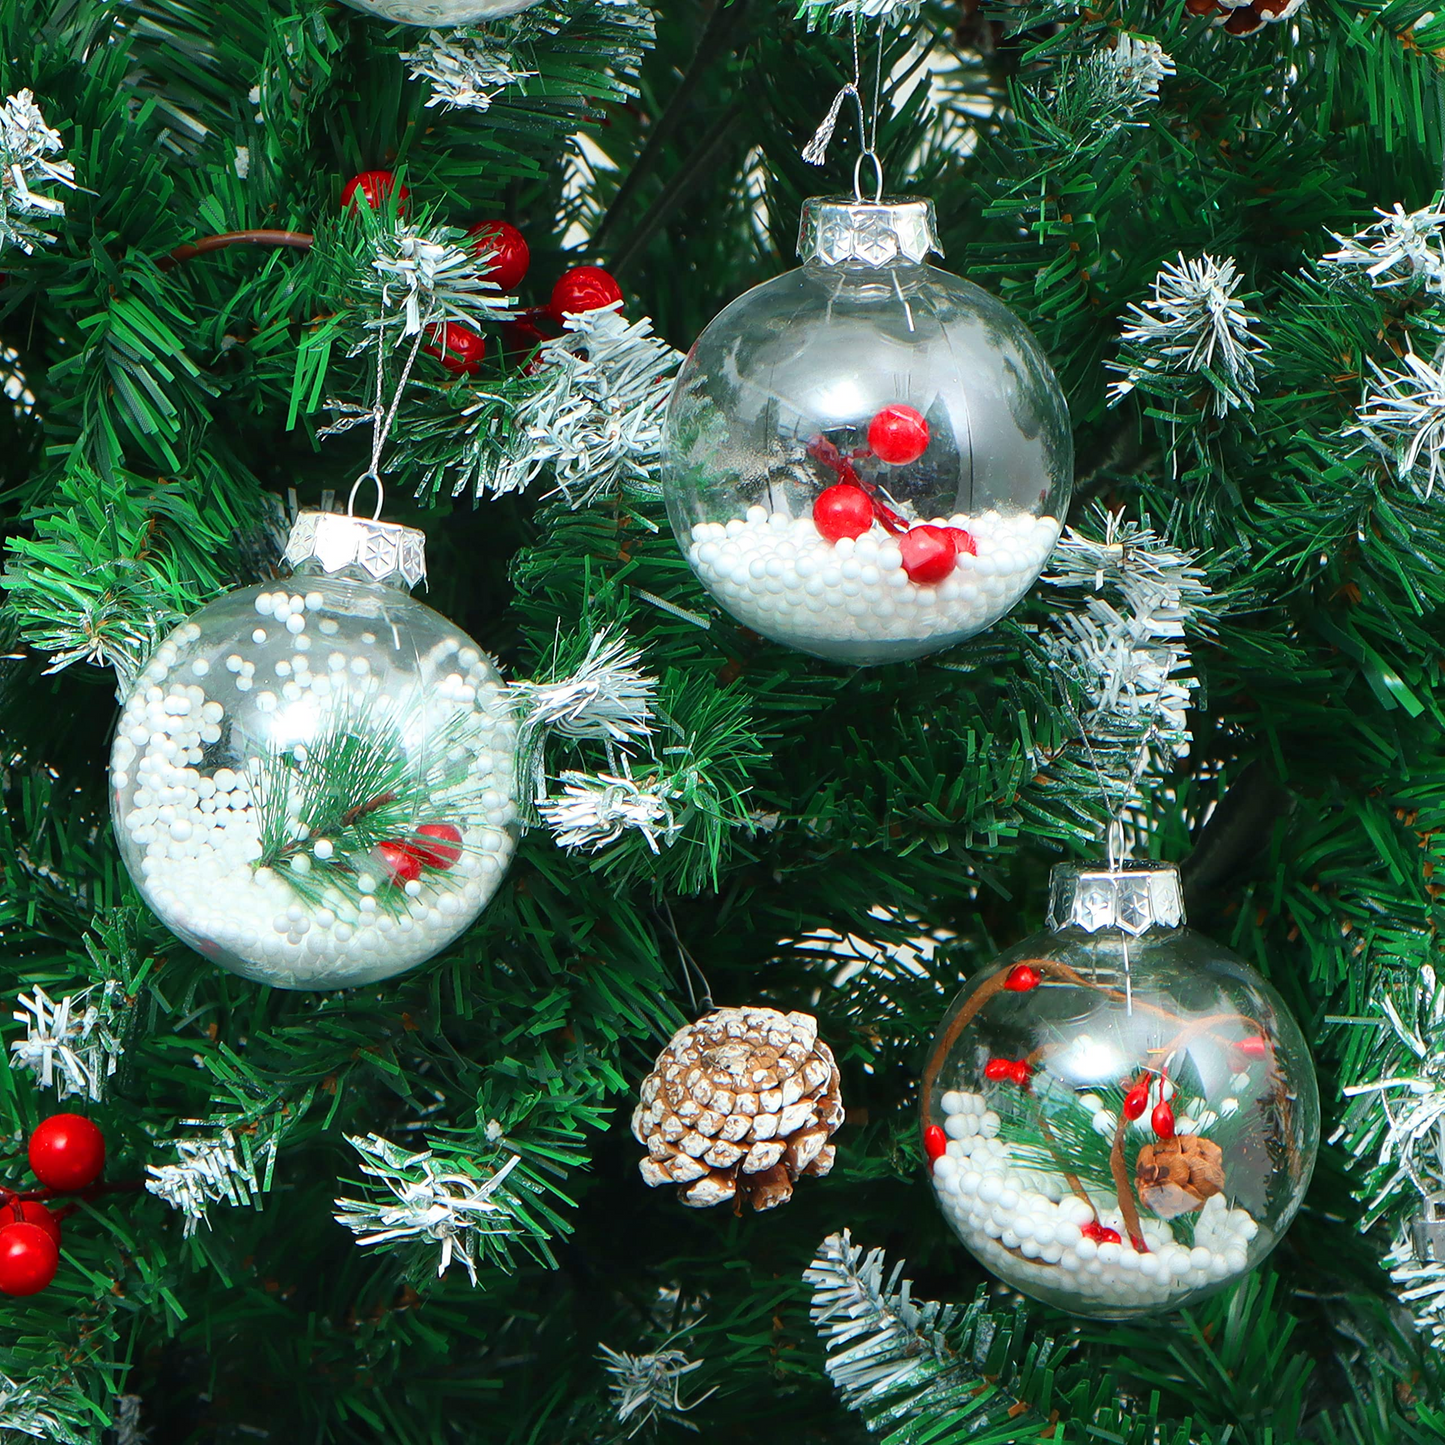 16 Pcs Christmas Snow Filling Ornaments Ball Ornaments